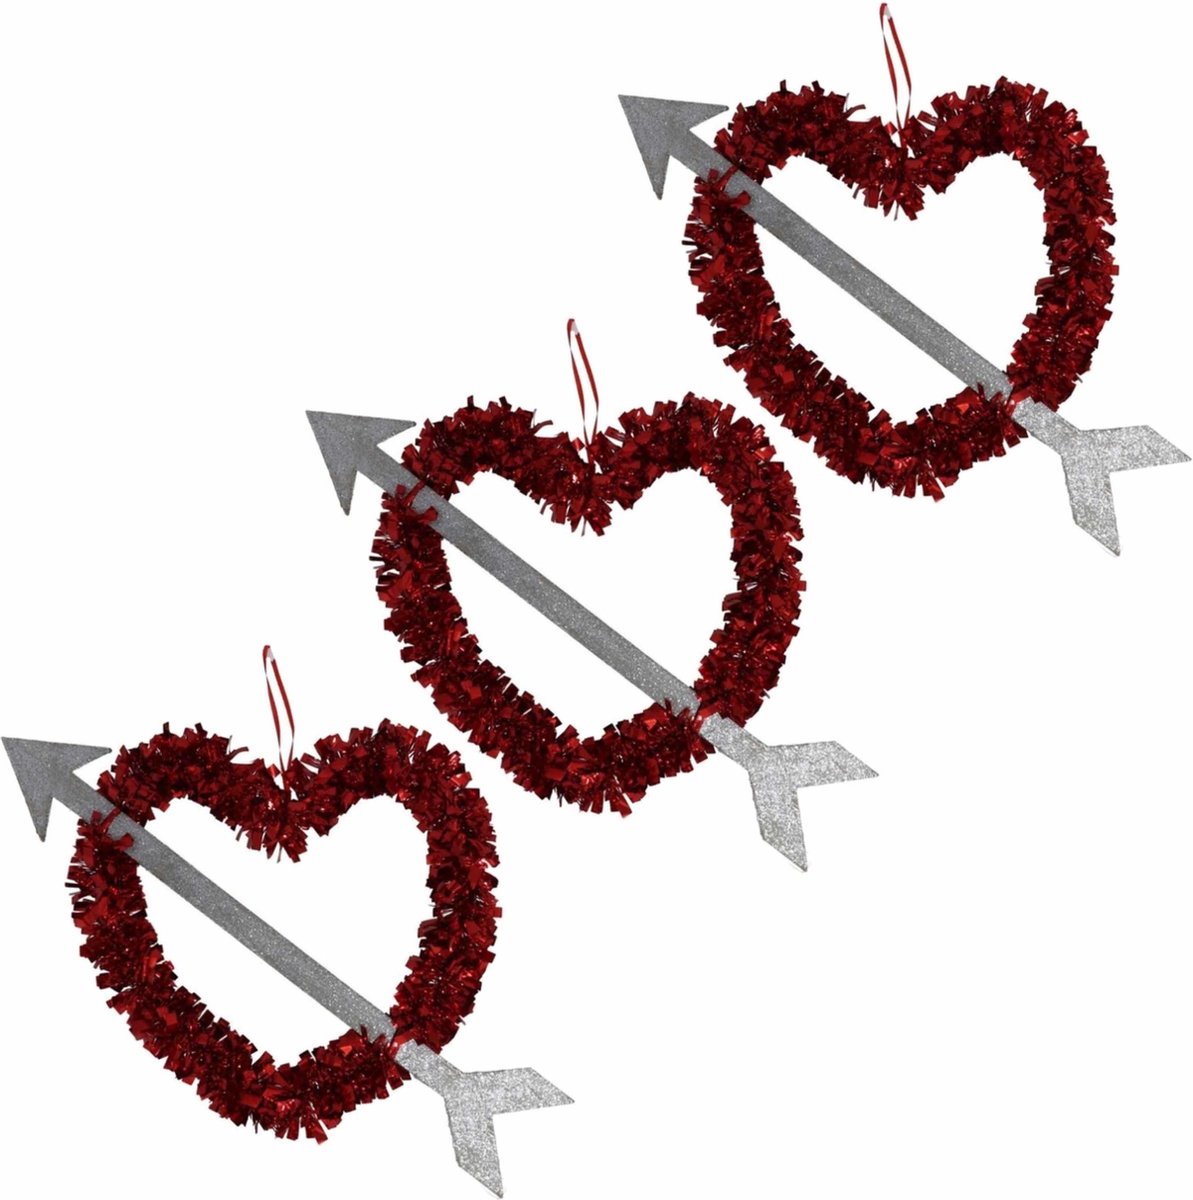 Valentijnsdag/bruiloft versiering hangend hart met pijl 45 cm - Lametta folie hangdecoratie hartjes